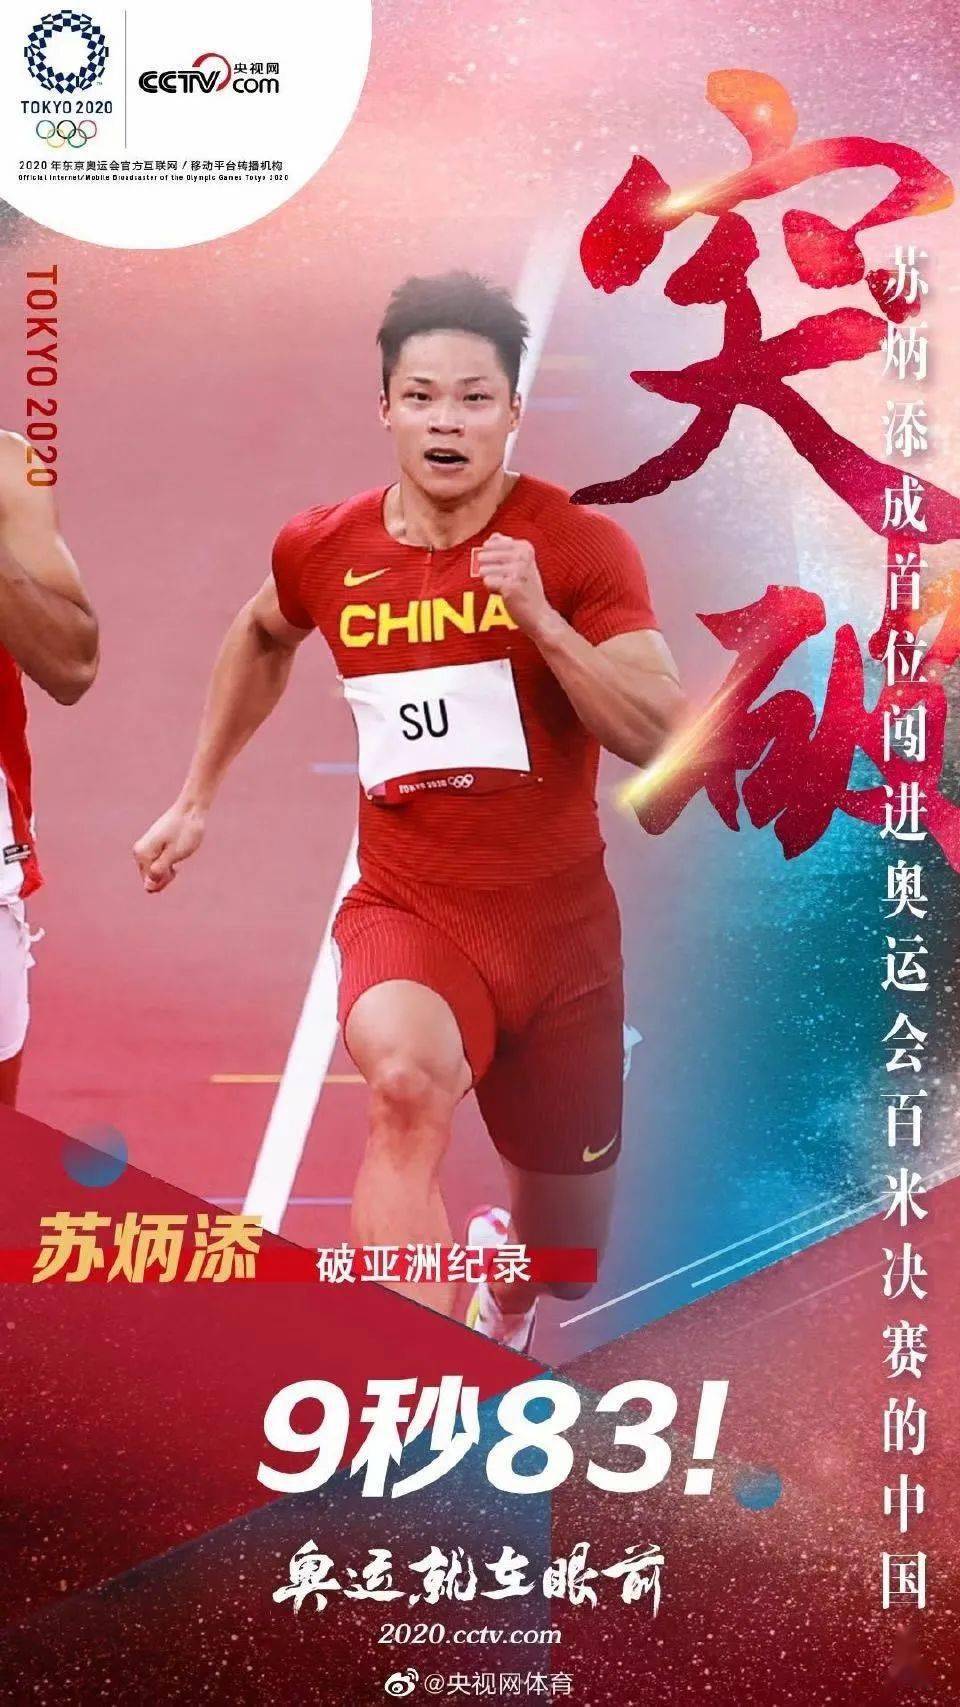 破世界记录?是体育精神,更是中国精神!_奥运